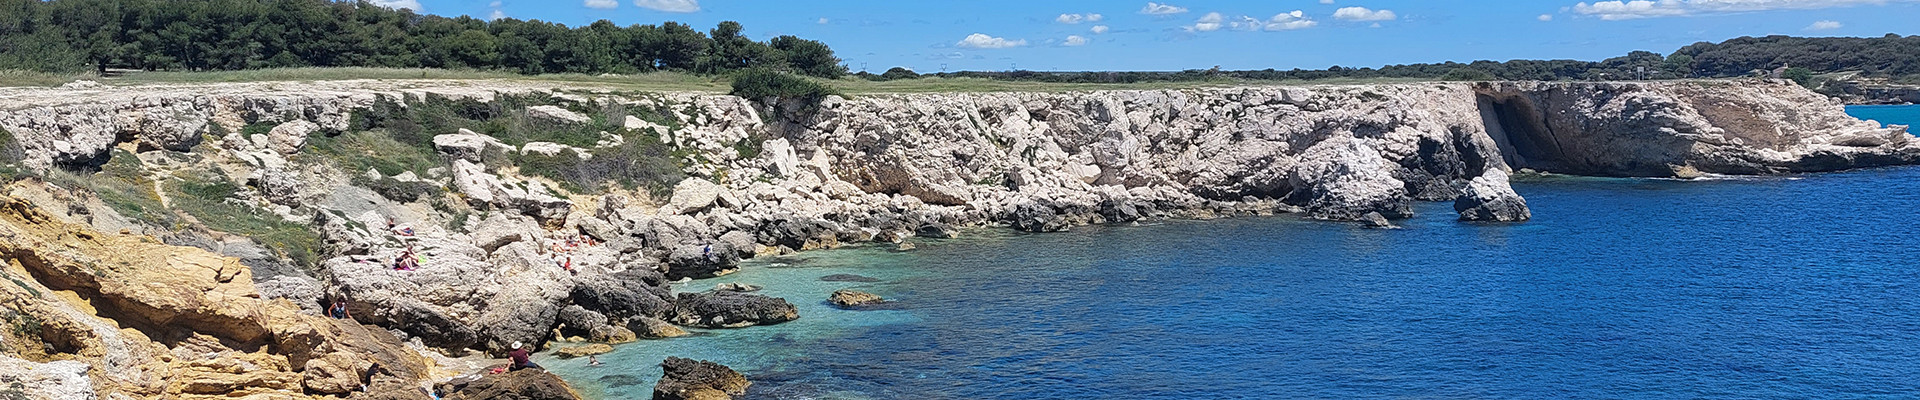 Naturaleza de Martigues - Ruta de la Gran Costa Azul